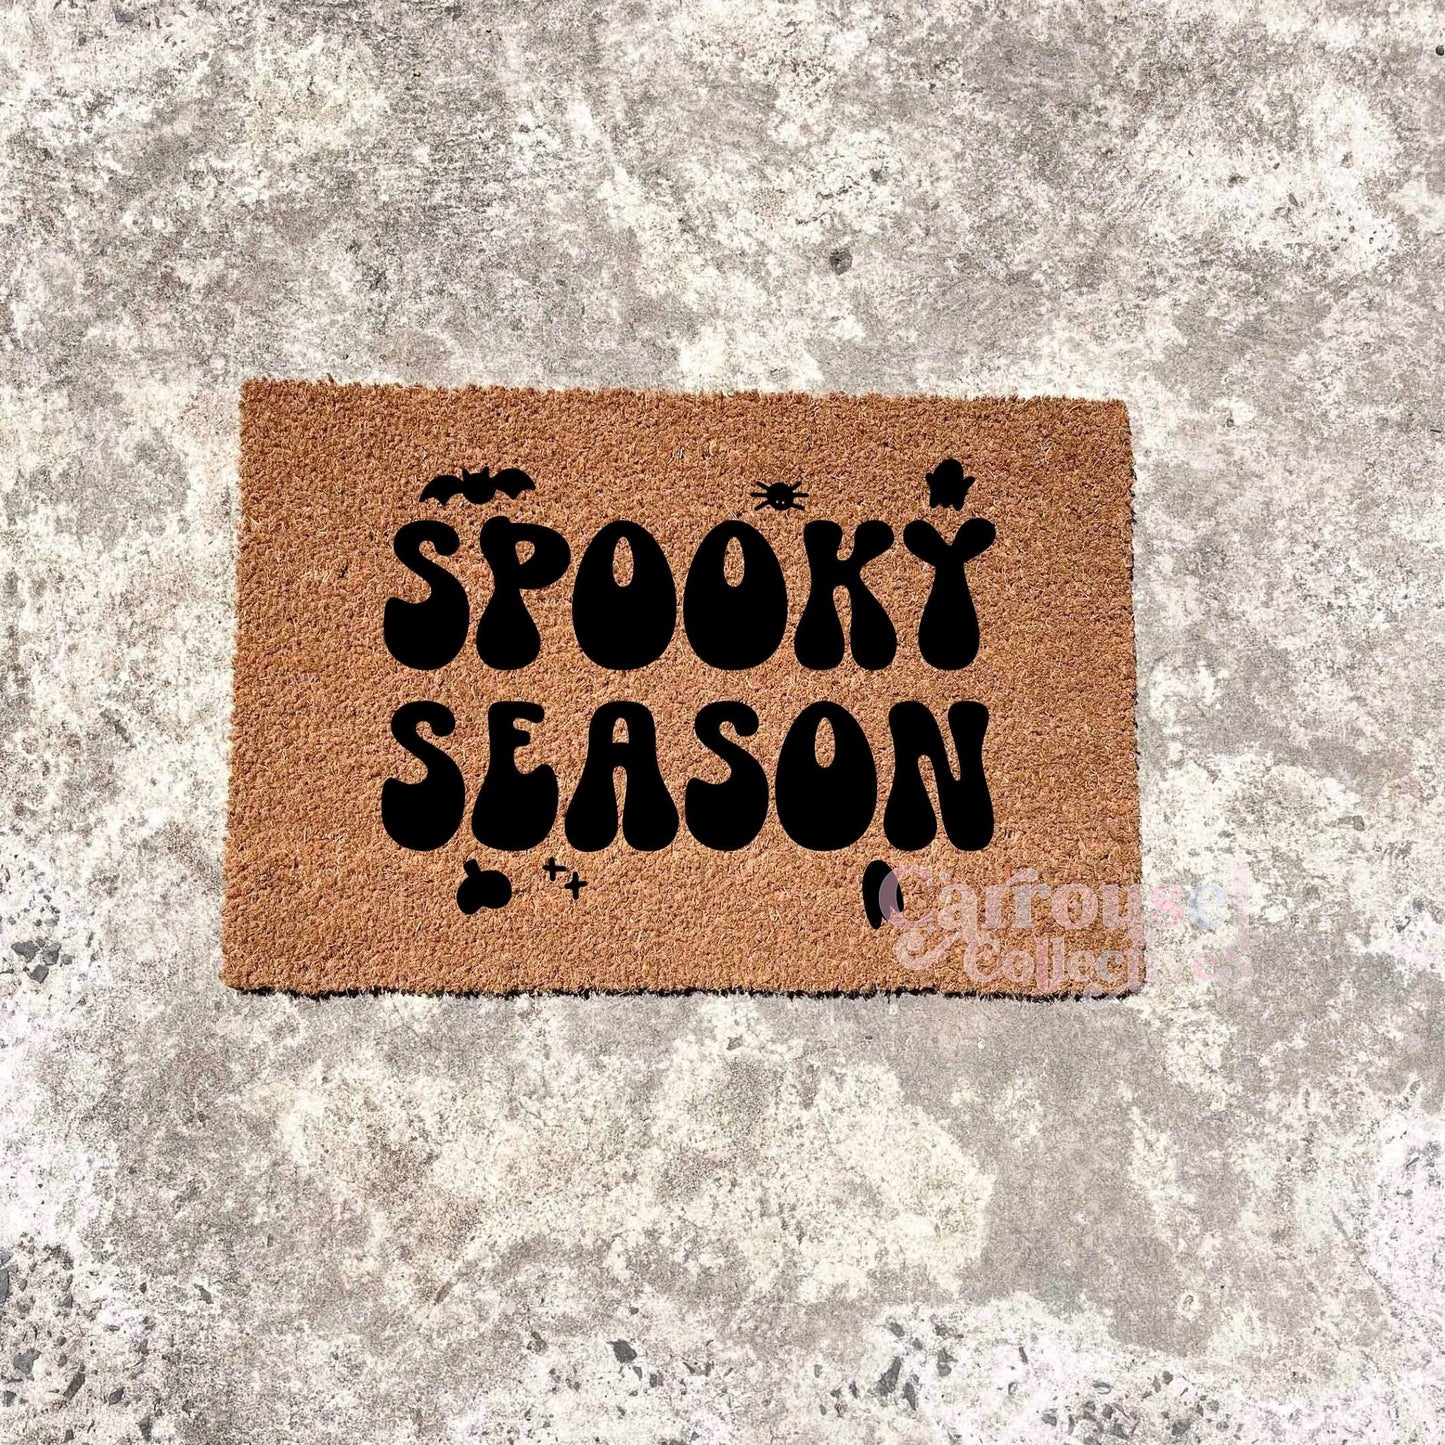 Spooky Season doormat, Halloween Doormat, Spooky Doormat, Creepy Doormat